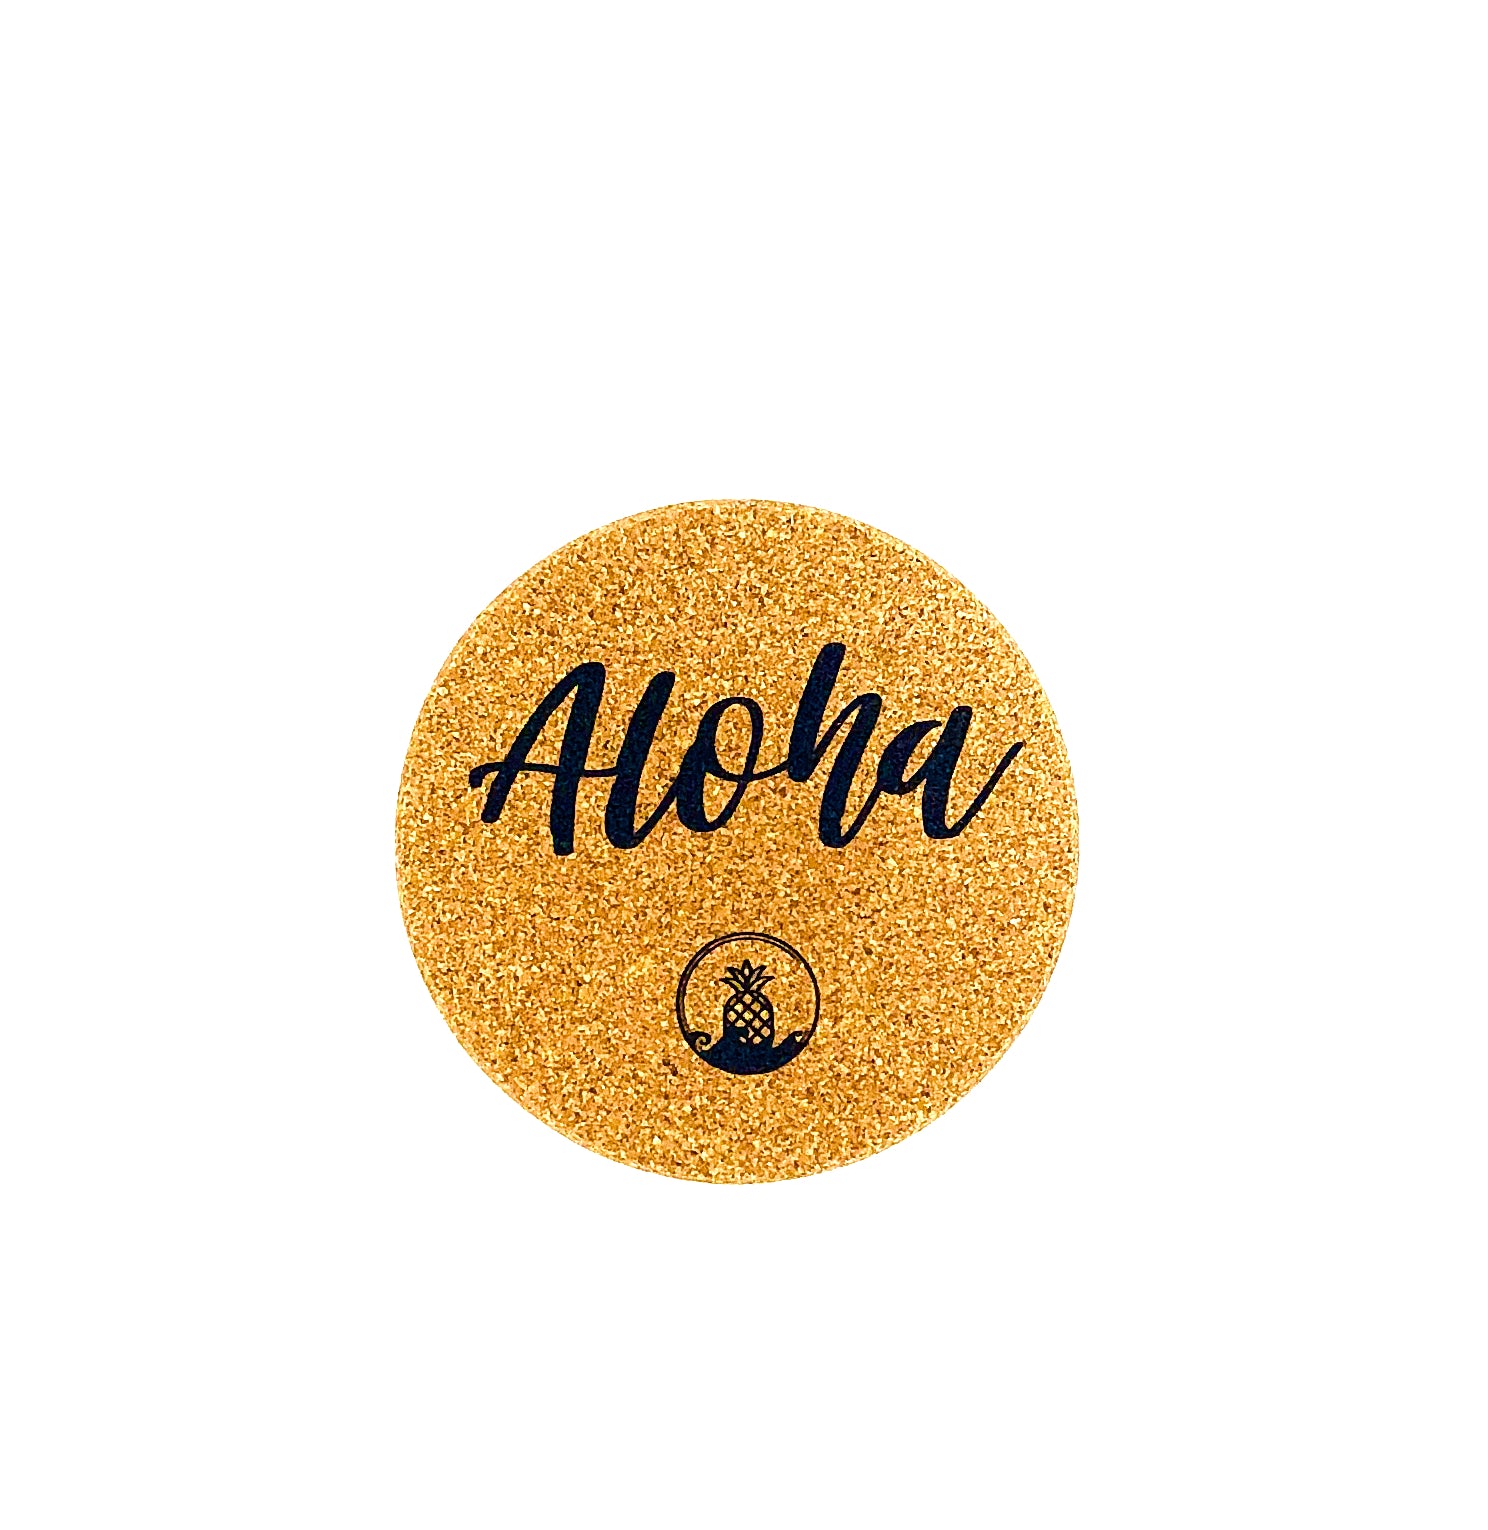 Aloha Box logo coaster